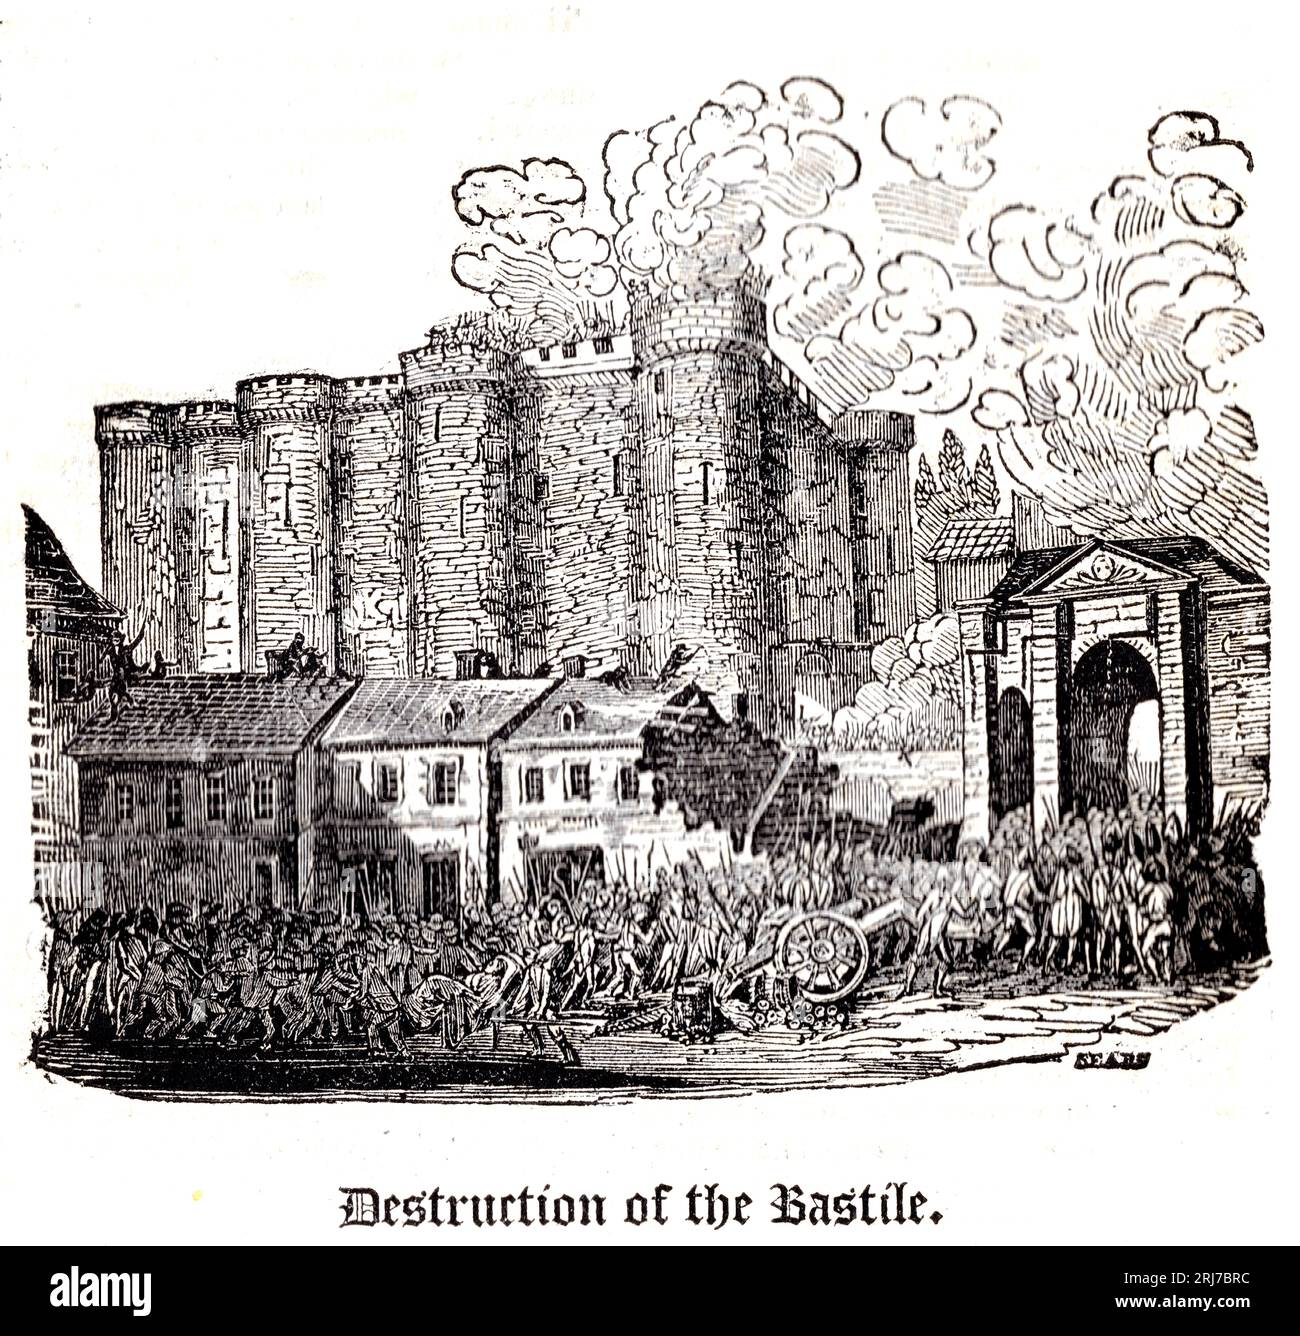 The Every-Day Book, William Hone (Londra, 1826) P.826 - Destruction of the Bastille - incisione in legno di Matthew Urlwin Sears Foto Stock